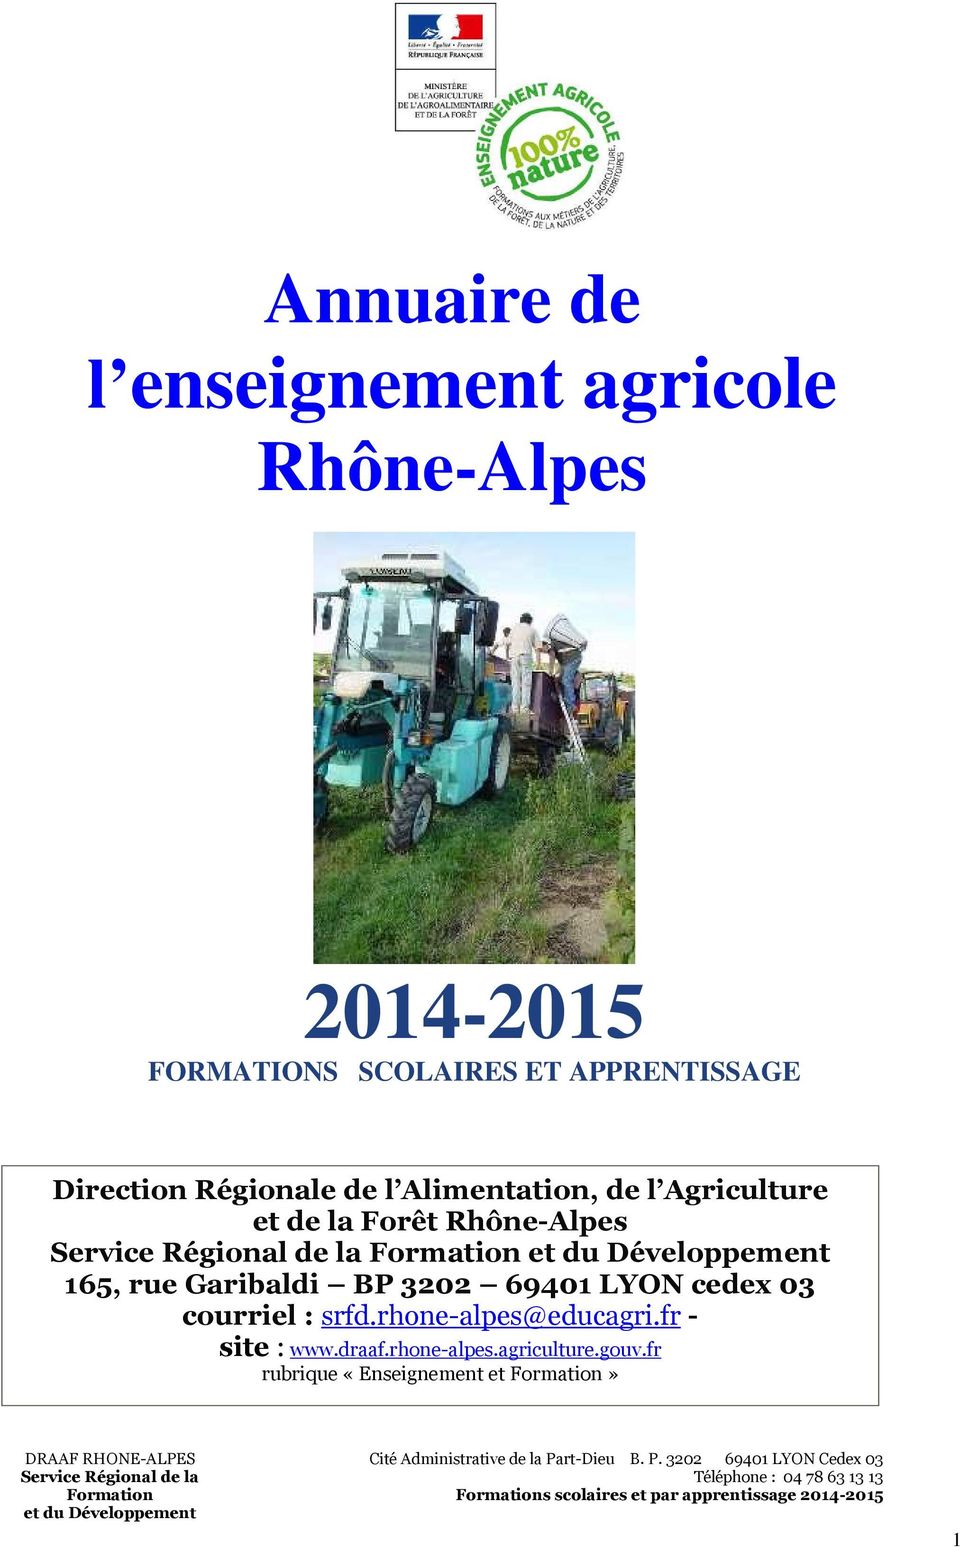 rhone-alpes@educagri.fr - site : www.draaf.rhone-alpes.agriculture.gouv.